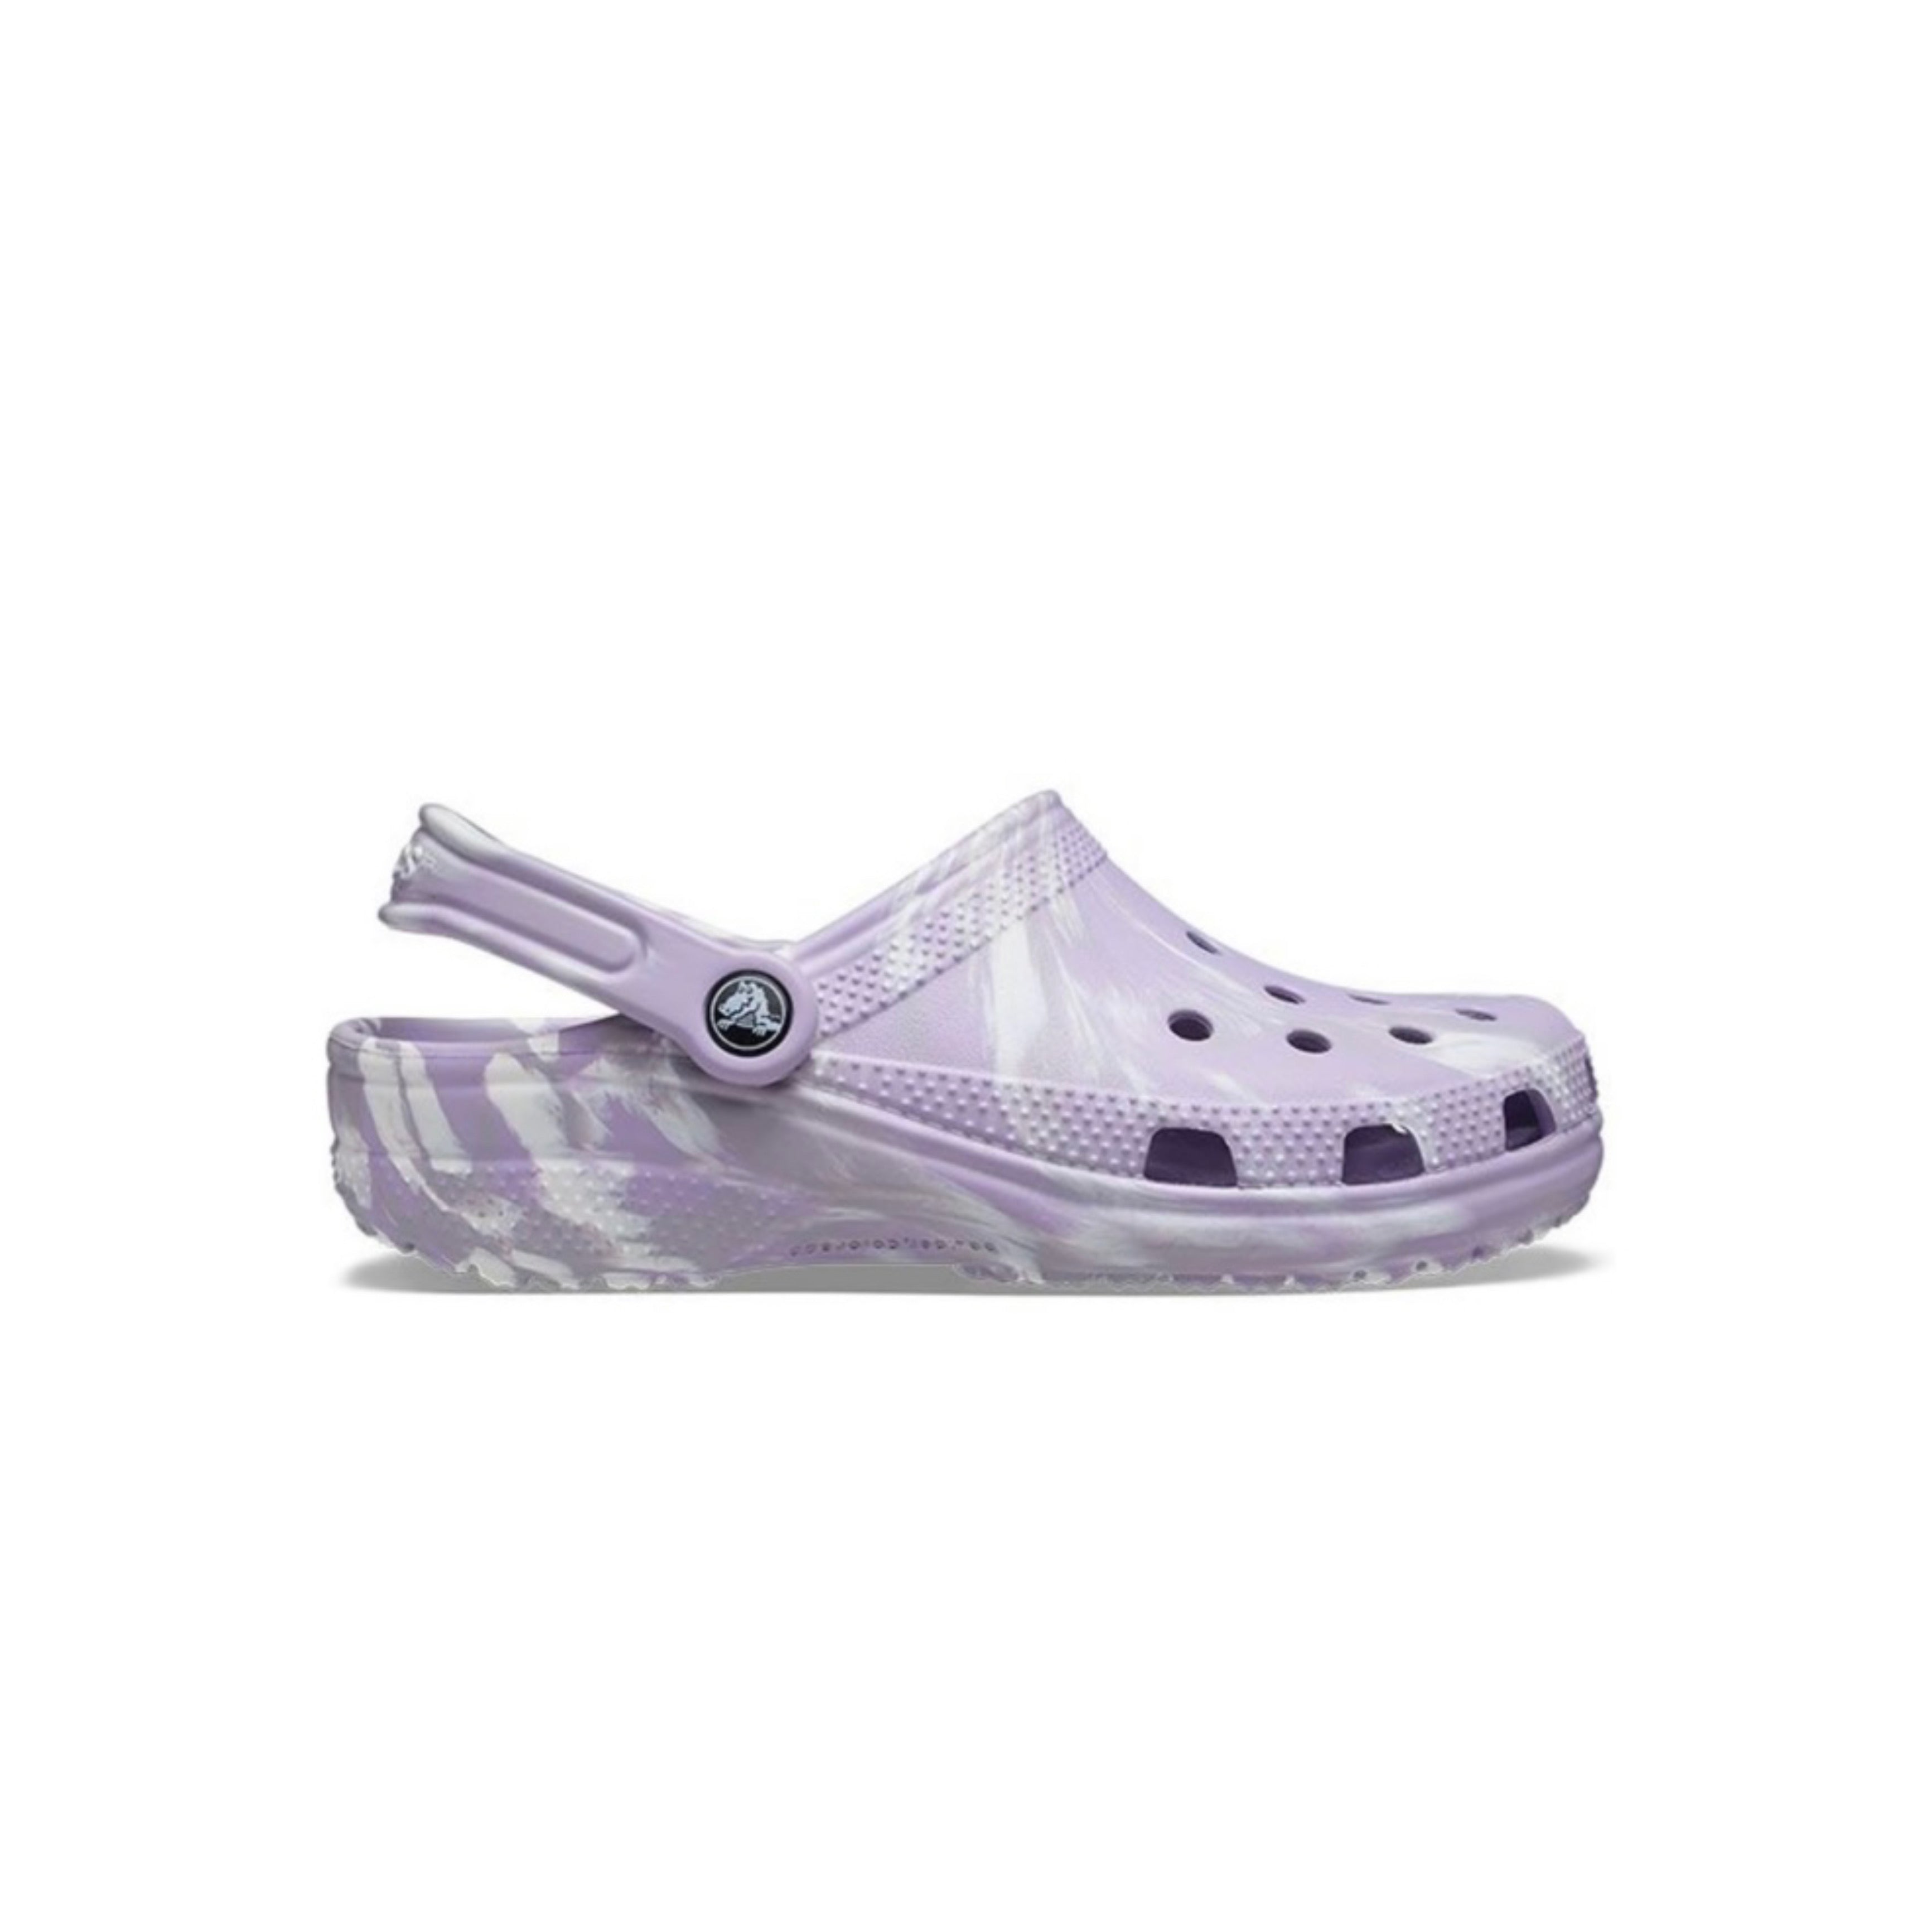 Marble purple crocs